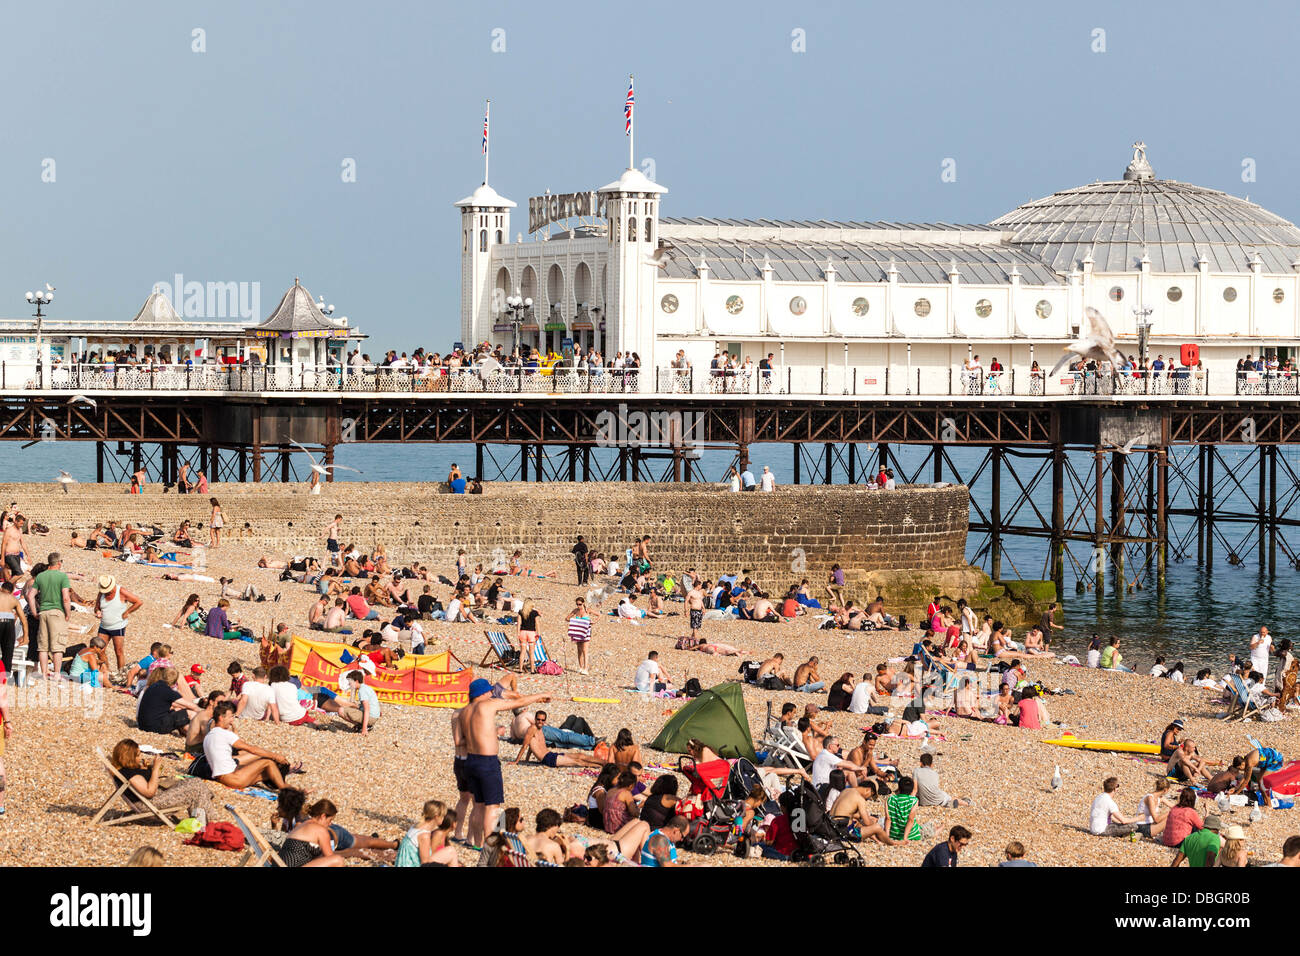 Plage et jetée très fréquentées, Brighton, Angleterre, Royaume-Uni. Banque D'Images